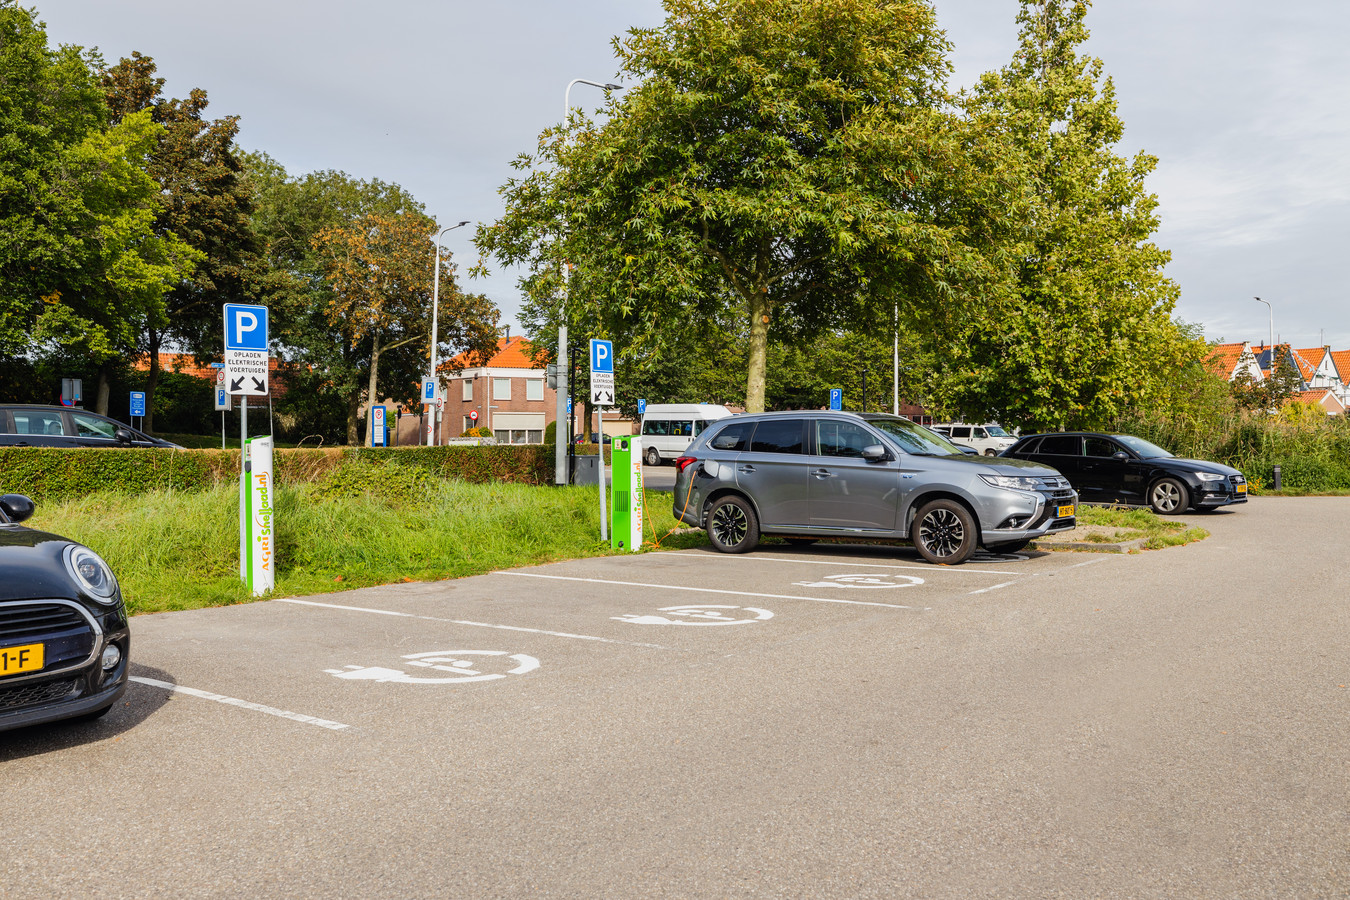 De parkeerplaats Hoofdpoort in Zierikzee, waar in 2021 3 laadpalen zijn geplaatst